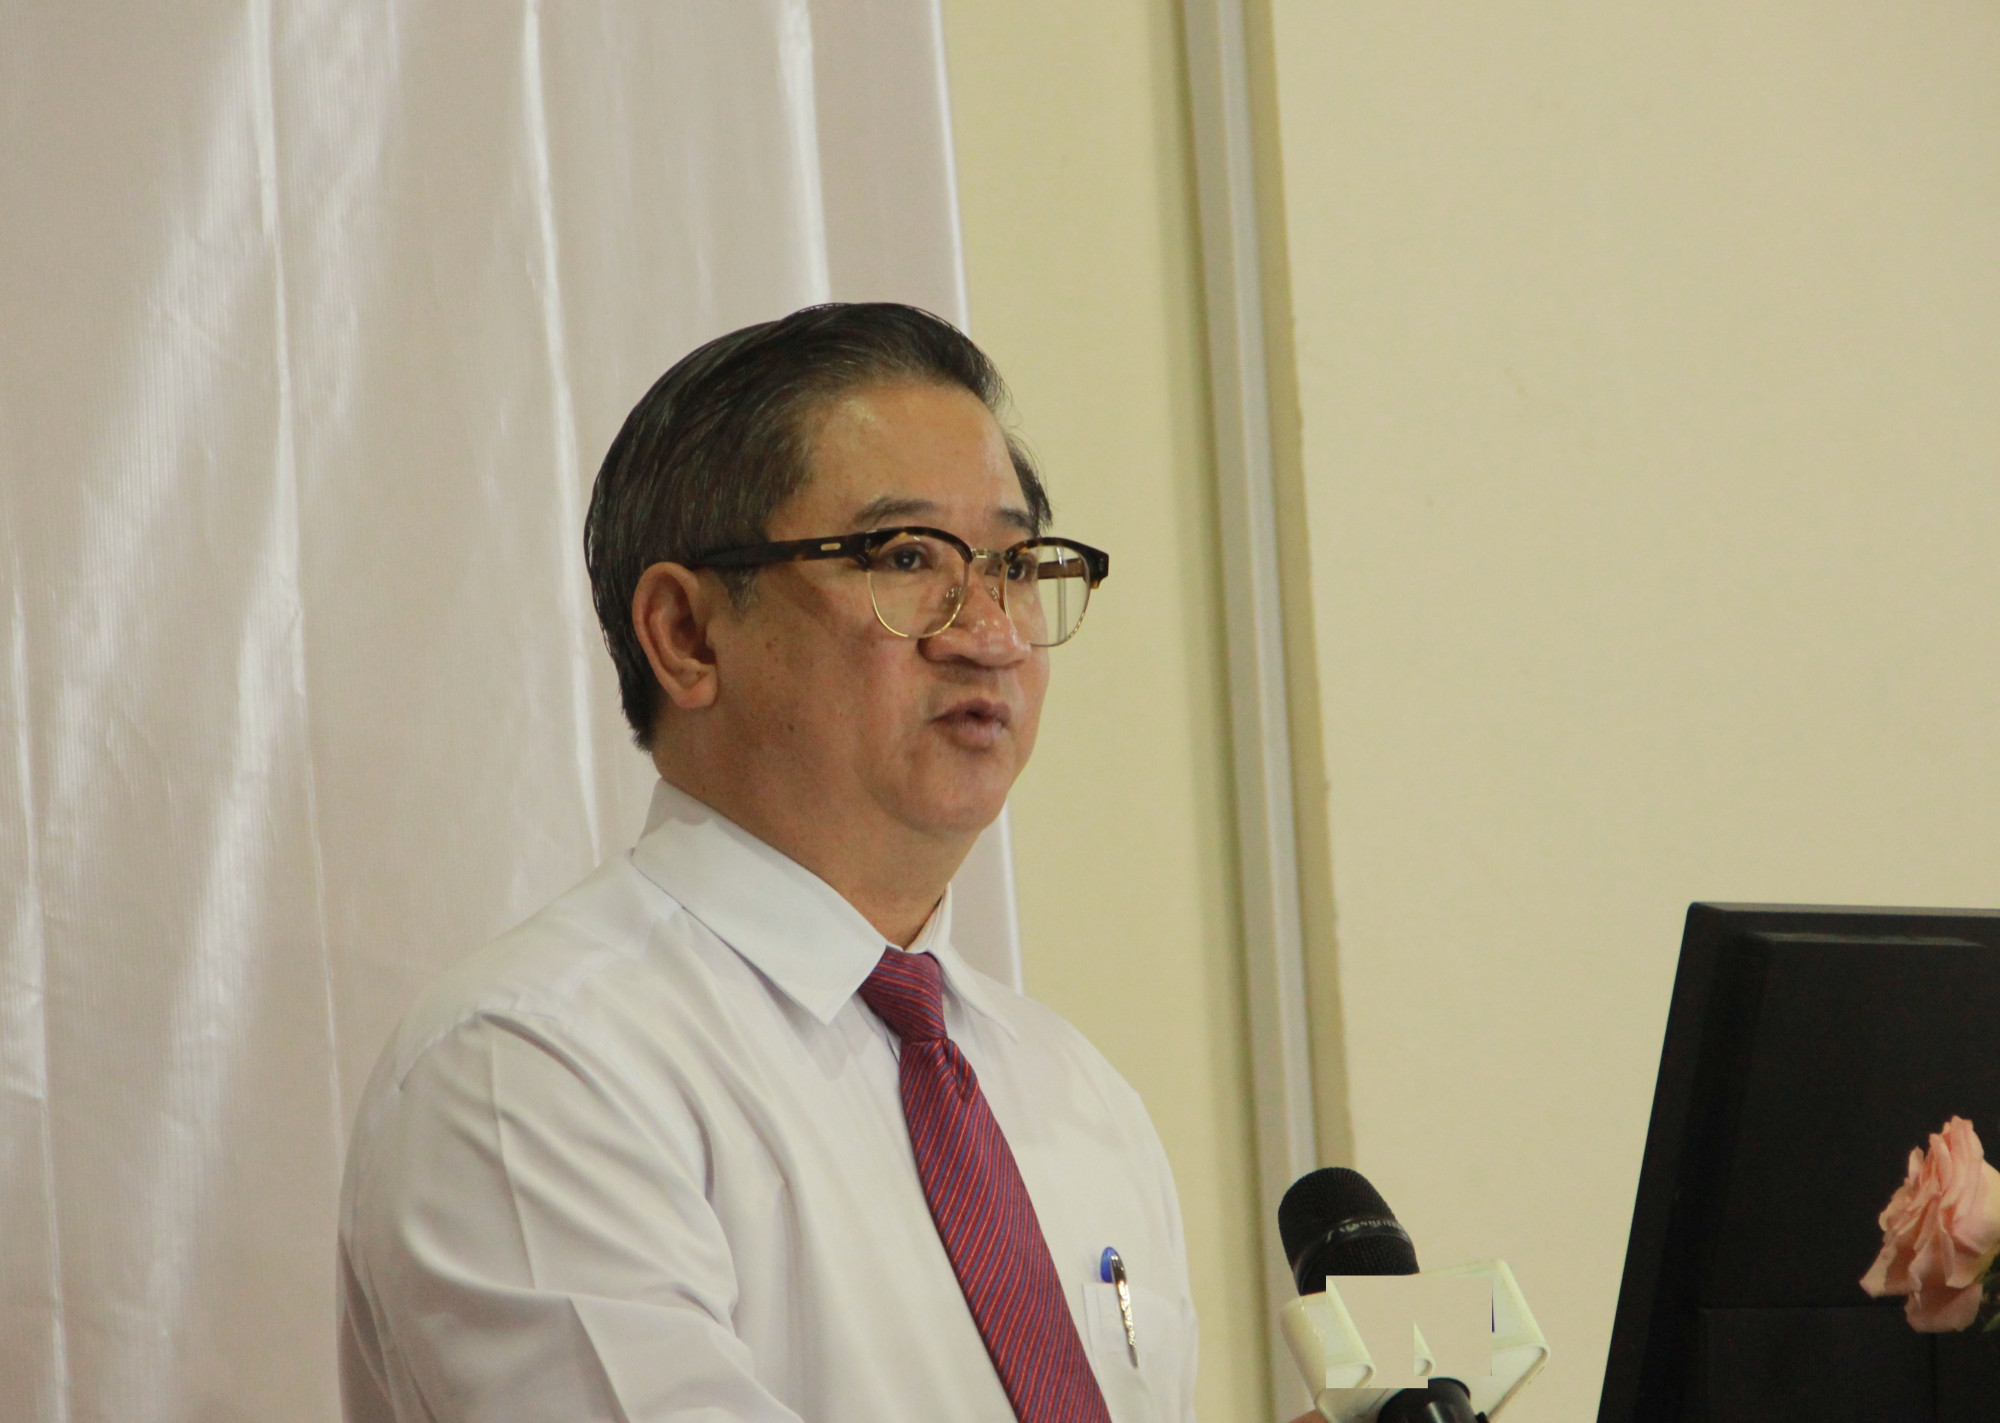 Chủ tịch UBND TP Cần Thơ Trần Việt Trường nói về vế những khó khăn, vướng mắc xuất phát từ thực tiễn của địa phương này trong quá trình quản lý và thực thi Luật Đất đai năm 2013